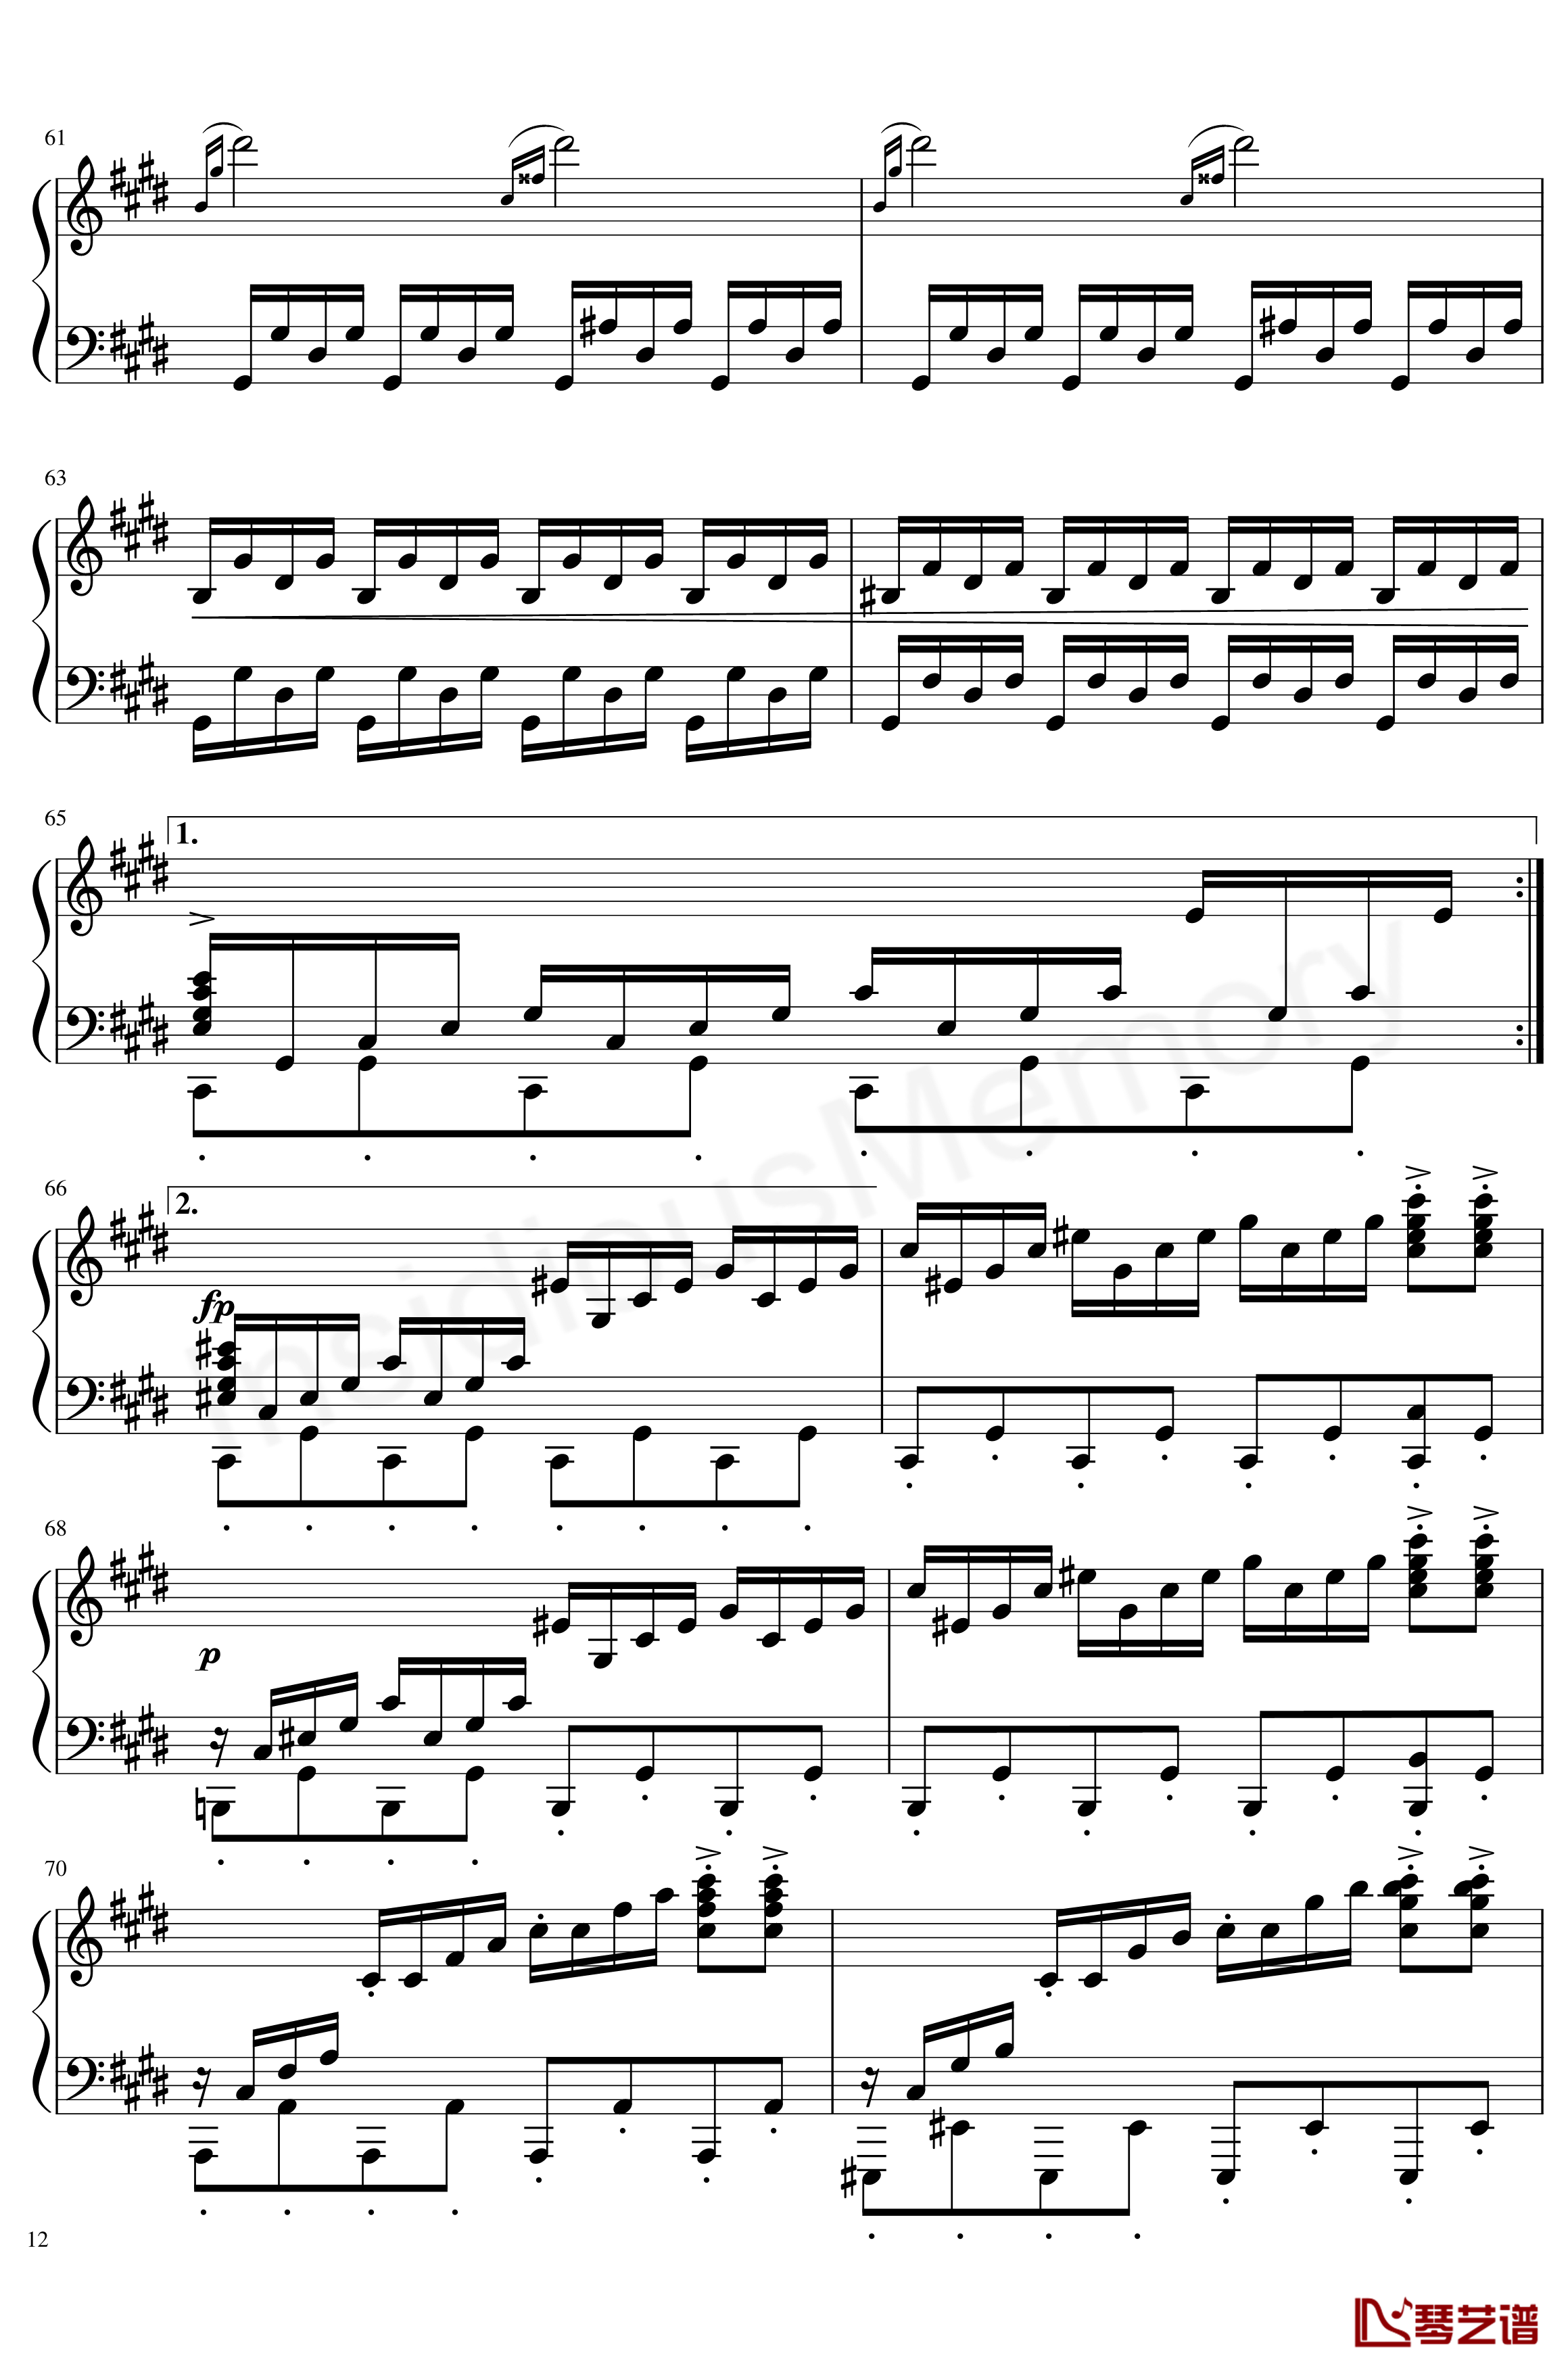 月光奏鸣曲钢琴谱-贝多芬-beethoven